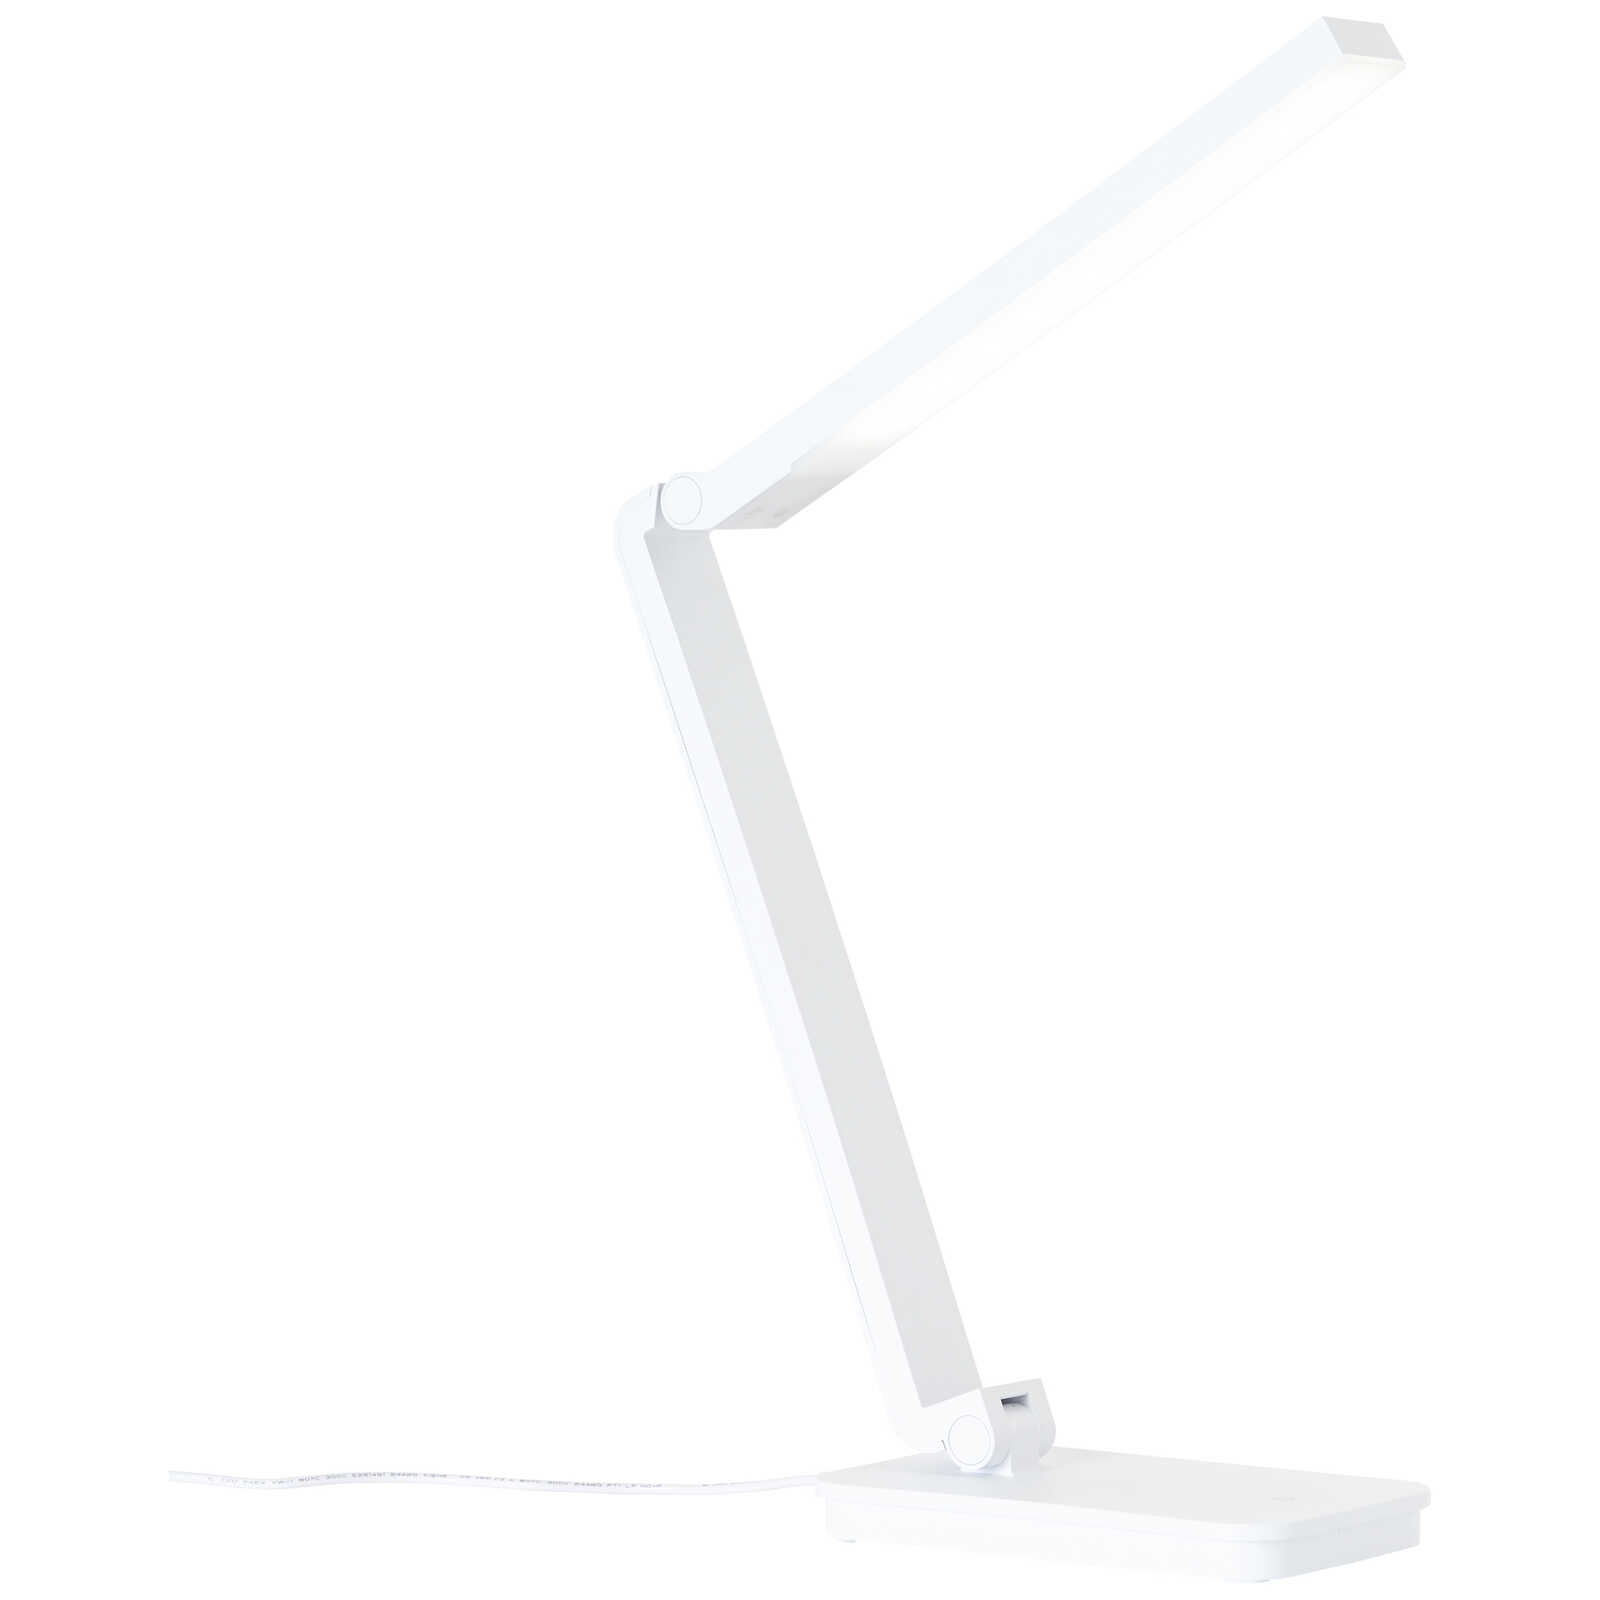             Plastic table lamp - Romy 1 - White
        